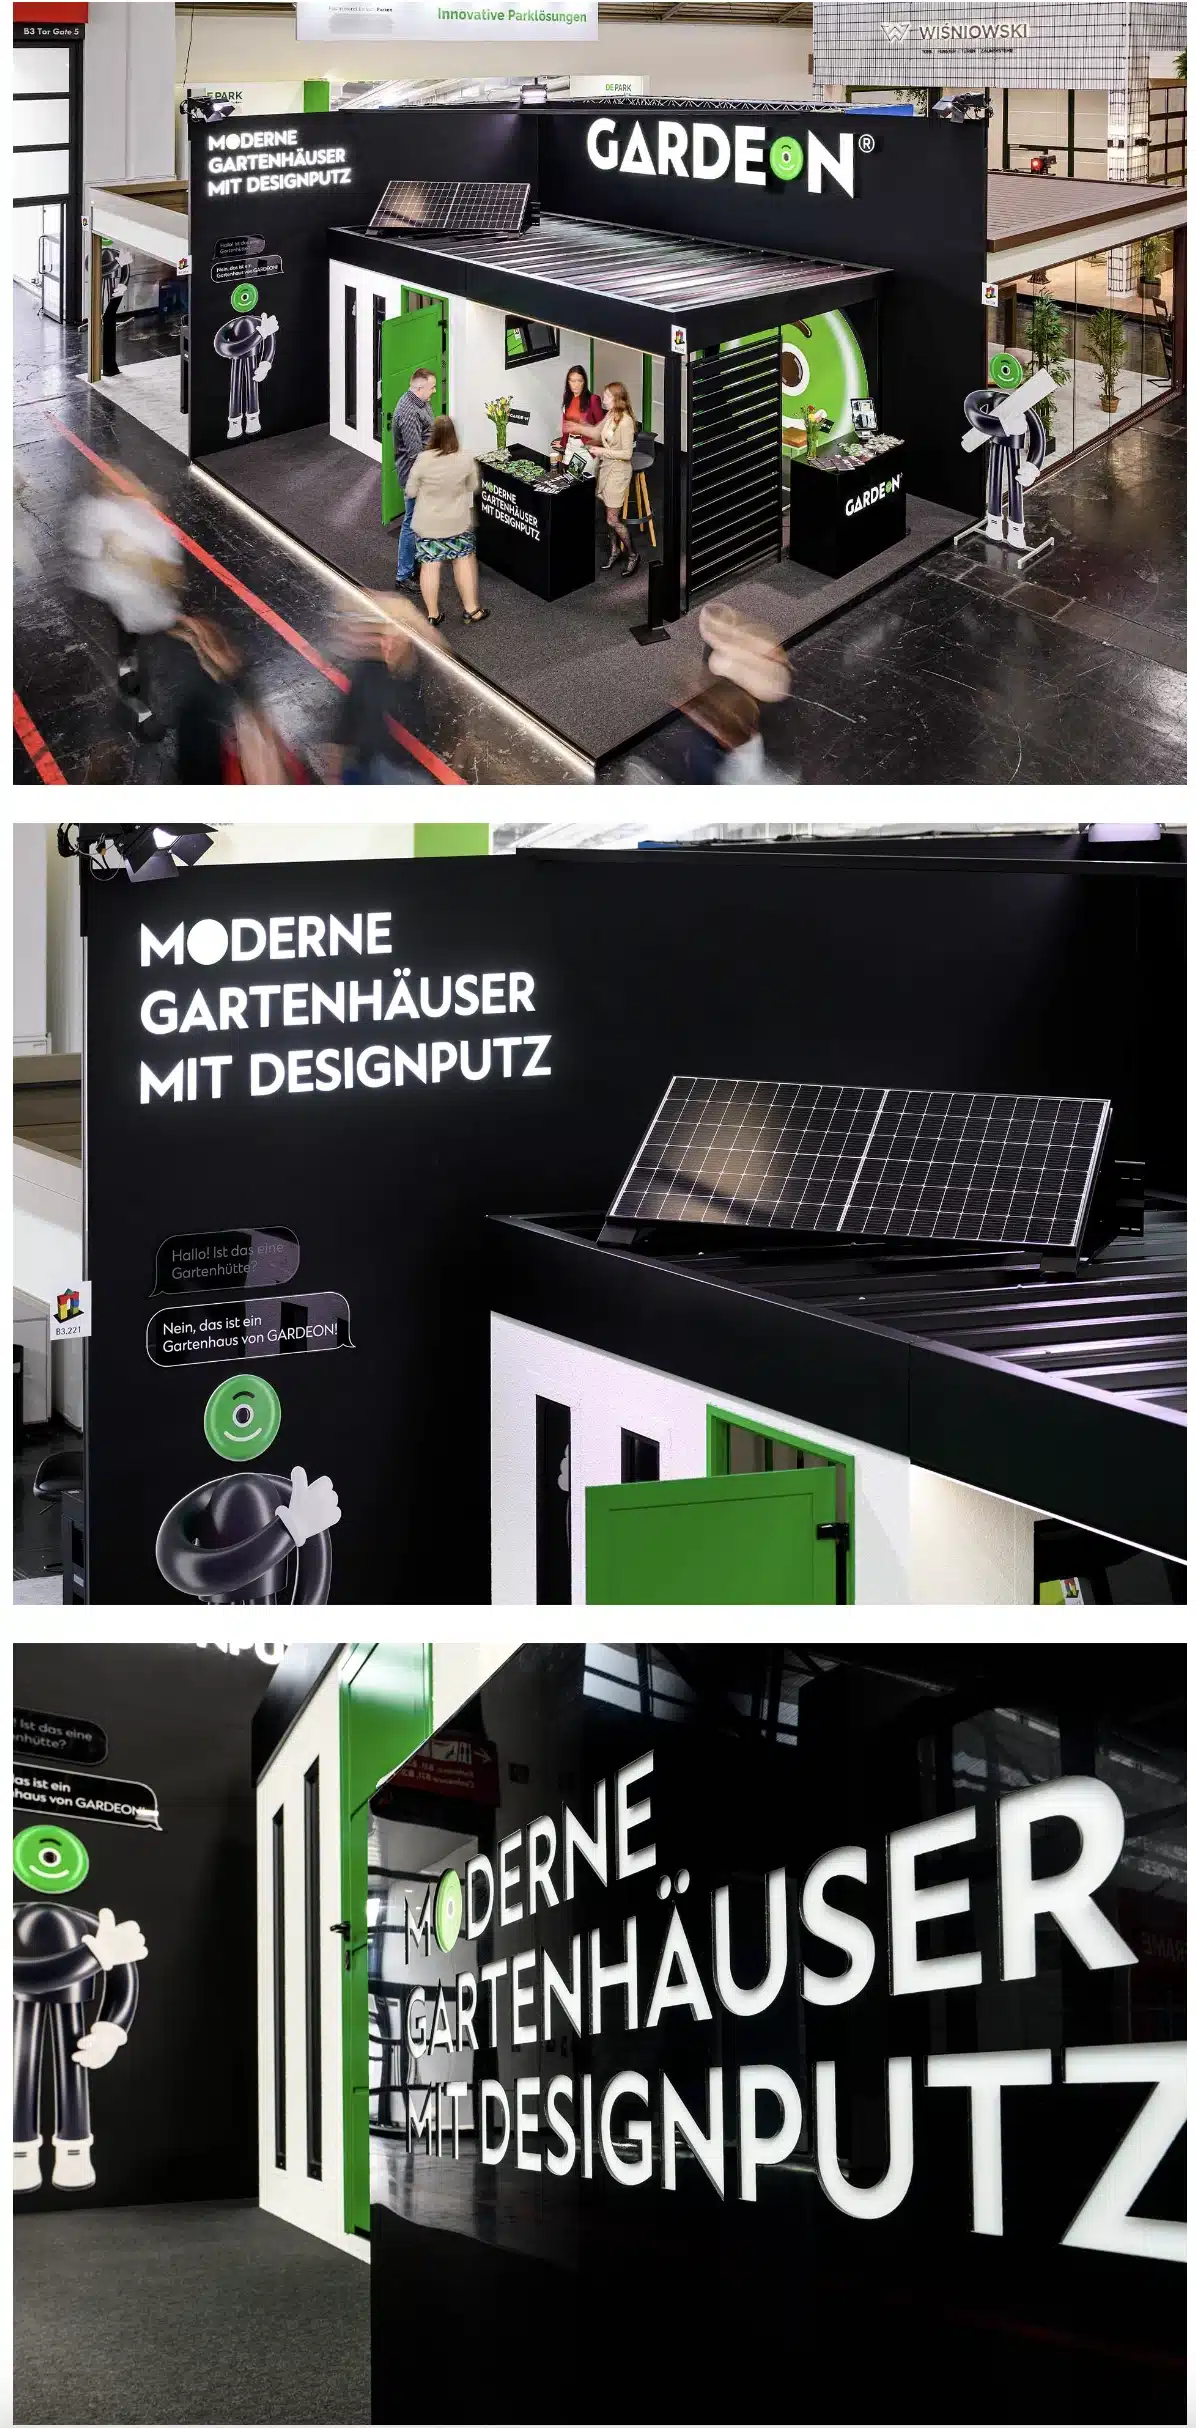 GARDEON branding fotky z výstavy v Německu